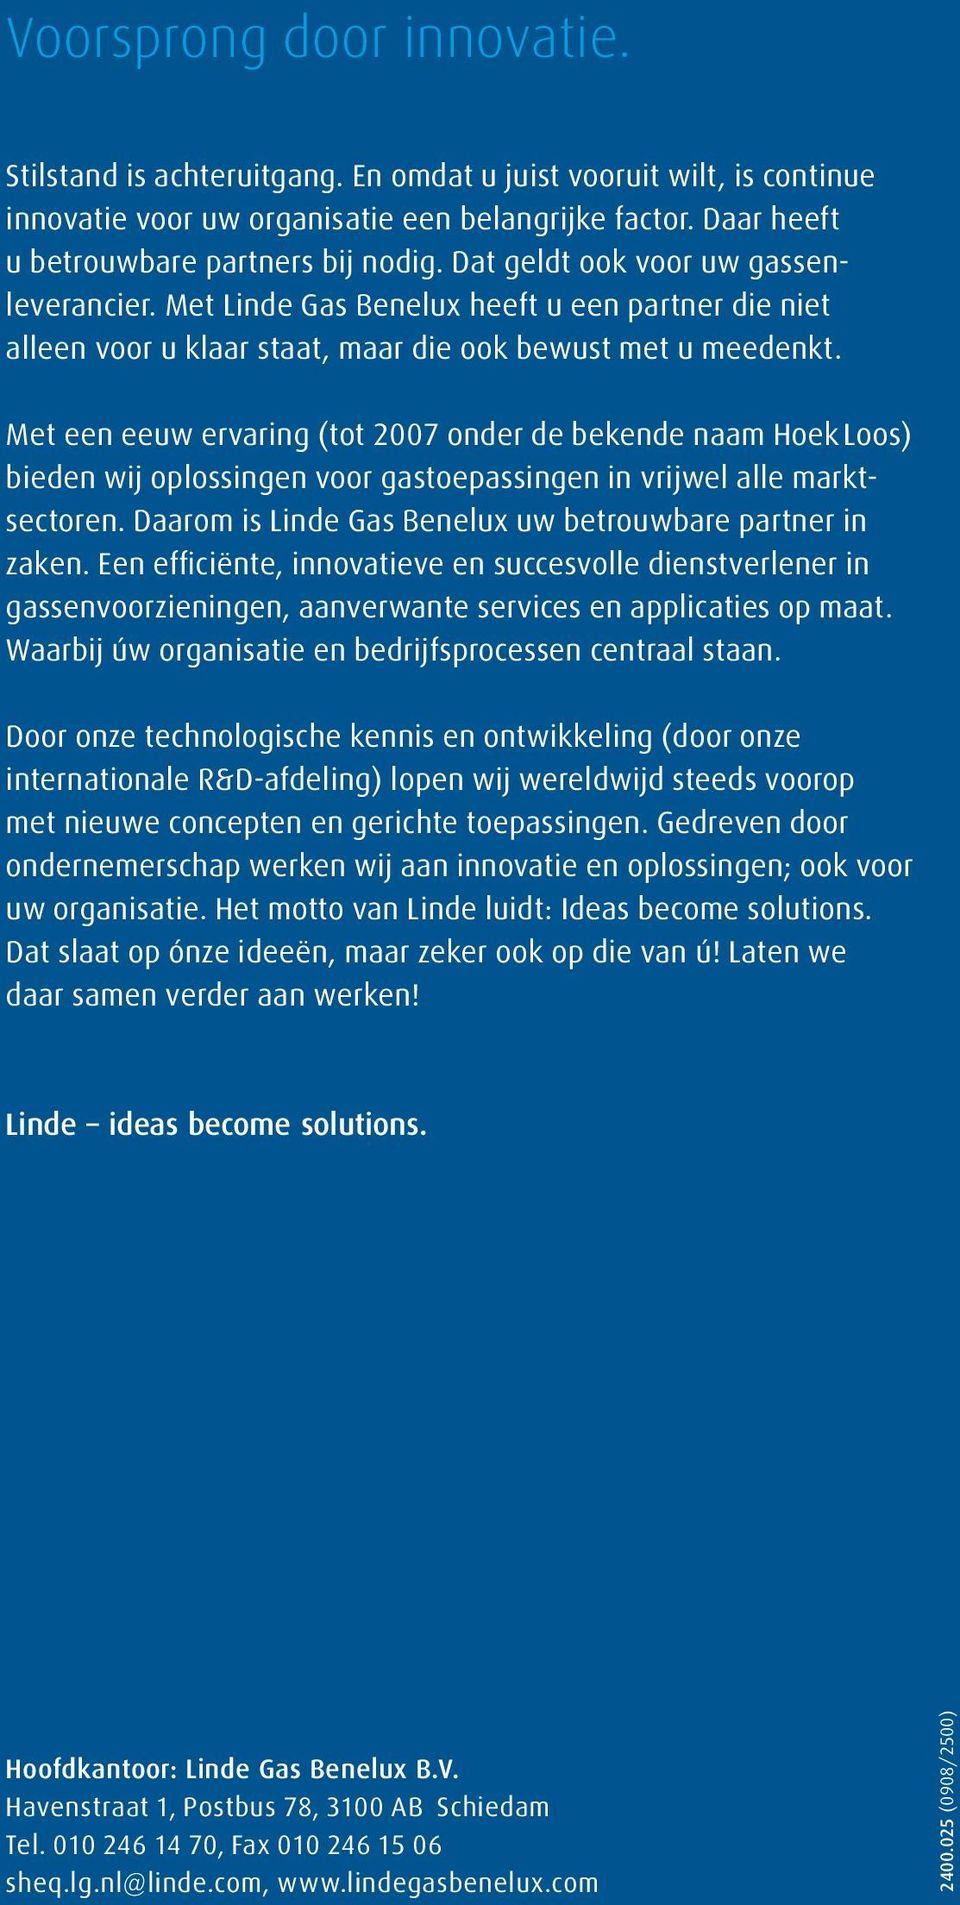 Met een eeuw ervaring (tot 2007 onder de bekende naam Hoek Loos) bieden wij oplossingen voor gastoepassingen in vrijwel alle marktsectoren. Daarom is Linde Gas Benelux uw betrouwbare partner in zaken.